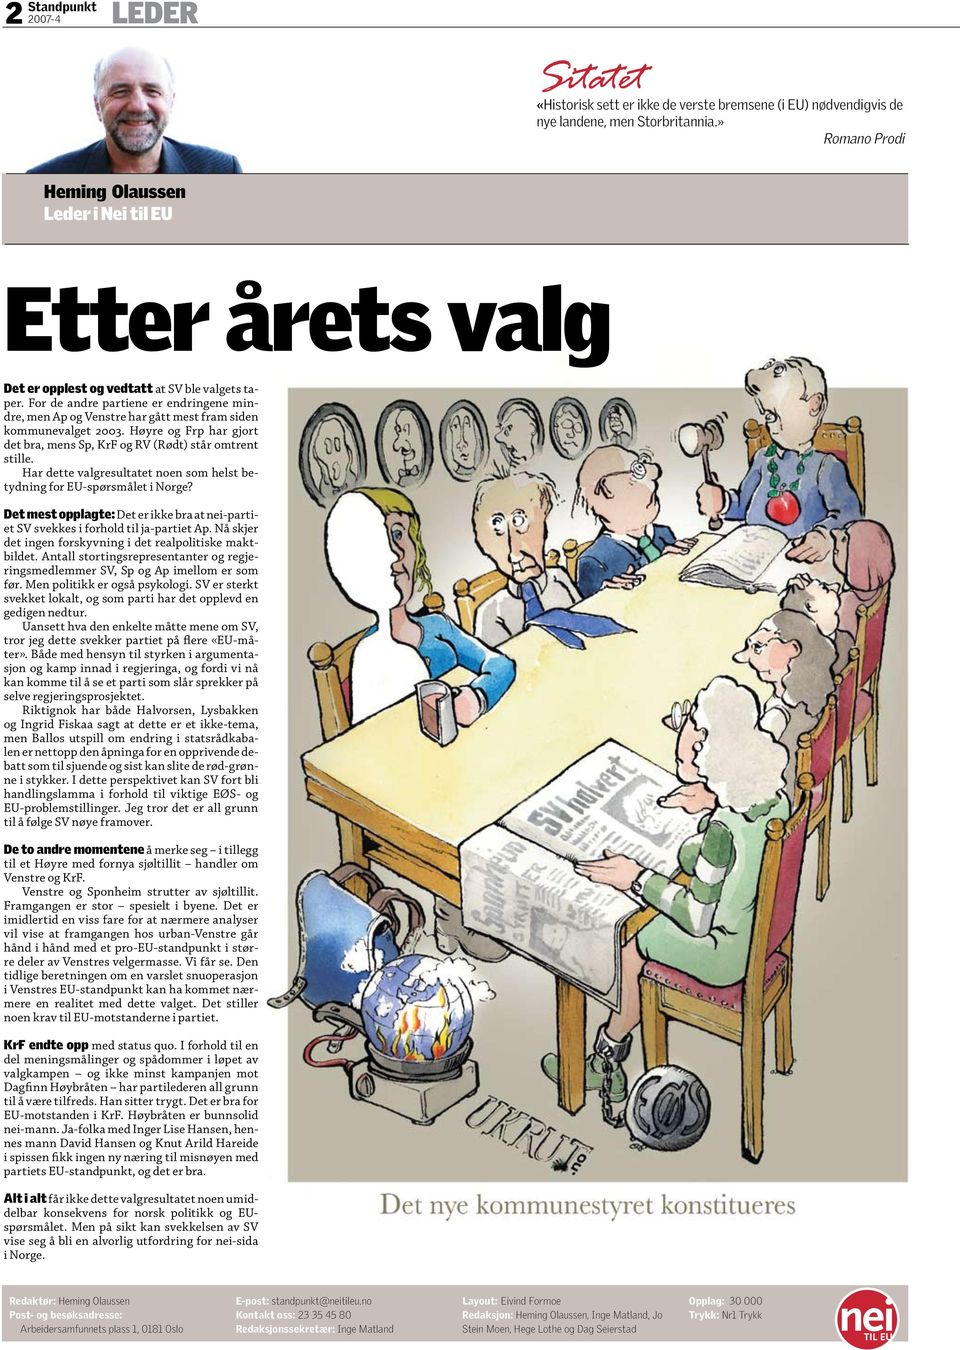 For de andre partiene er endringene mindre, men Ap og Venstre har gått mest fram siden kommunevalget 2003. Høyre og Frp har gjort det bra, mens Sp, KrF og RV (Rødt) står omtrent stille.